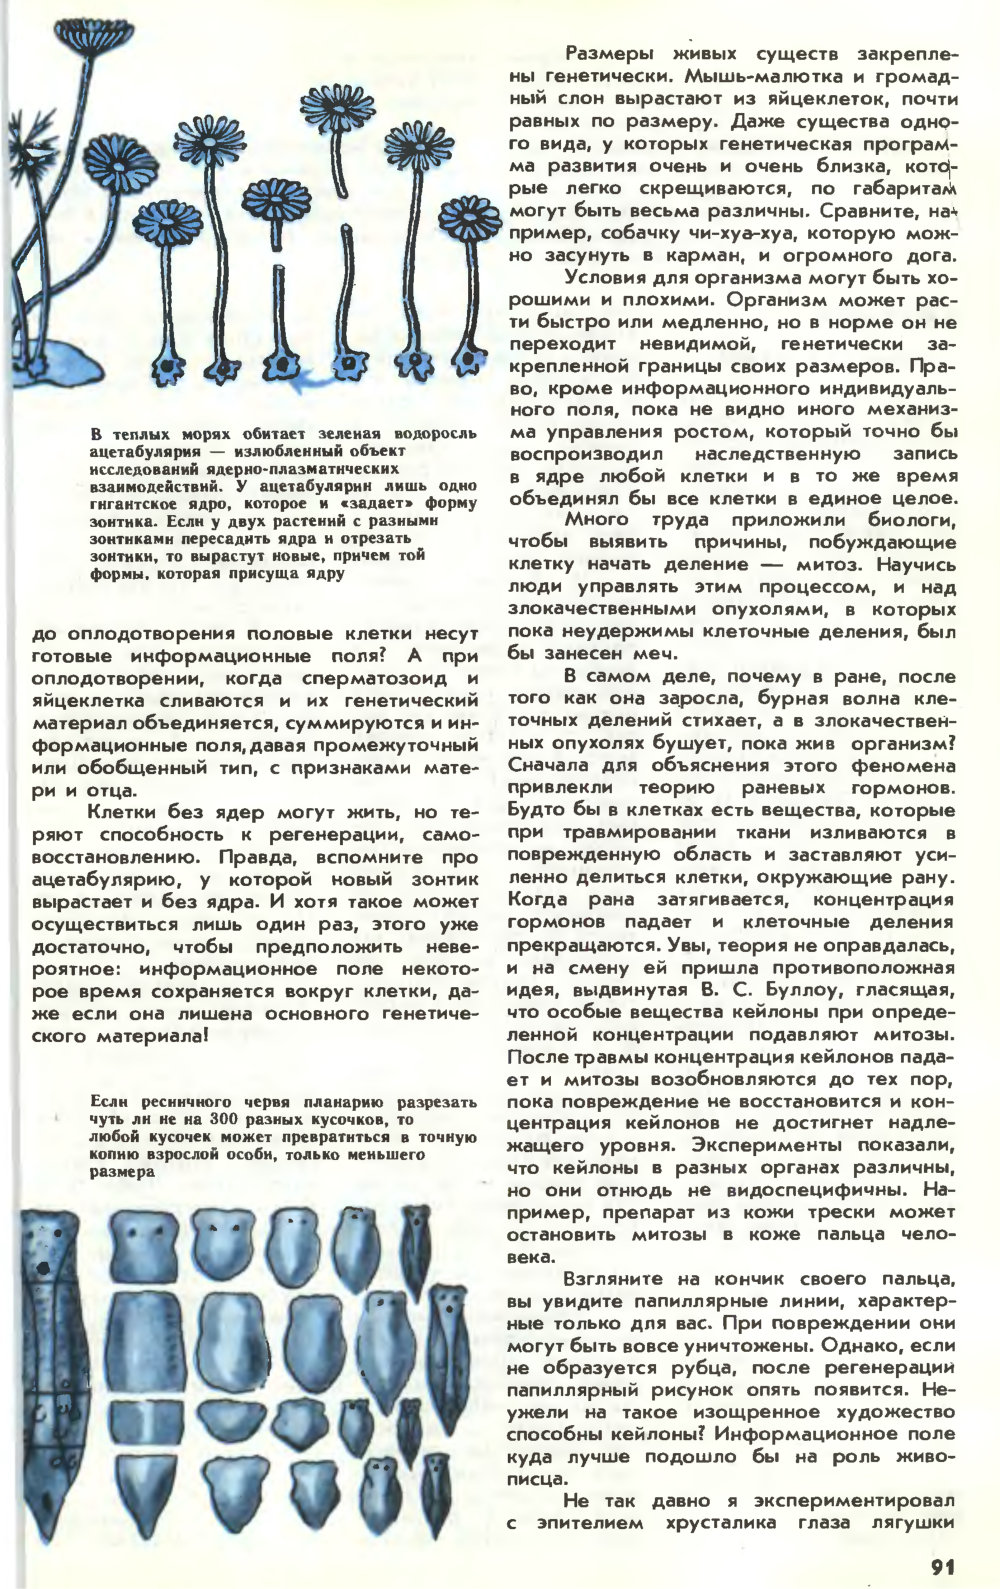 Информационное поле жизни. Ю. Симаков. Химия и жизнь, 1983, №3, с.88-92. Фотокопия №4